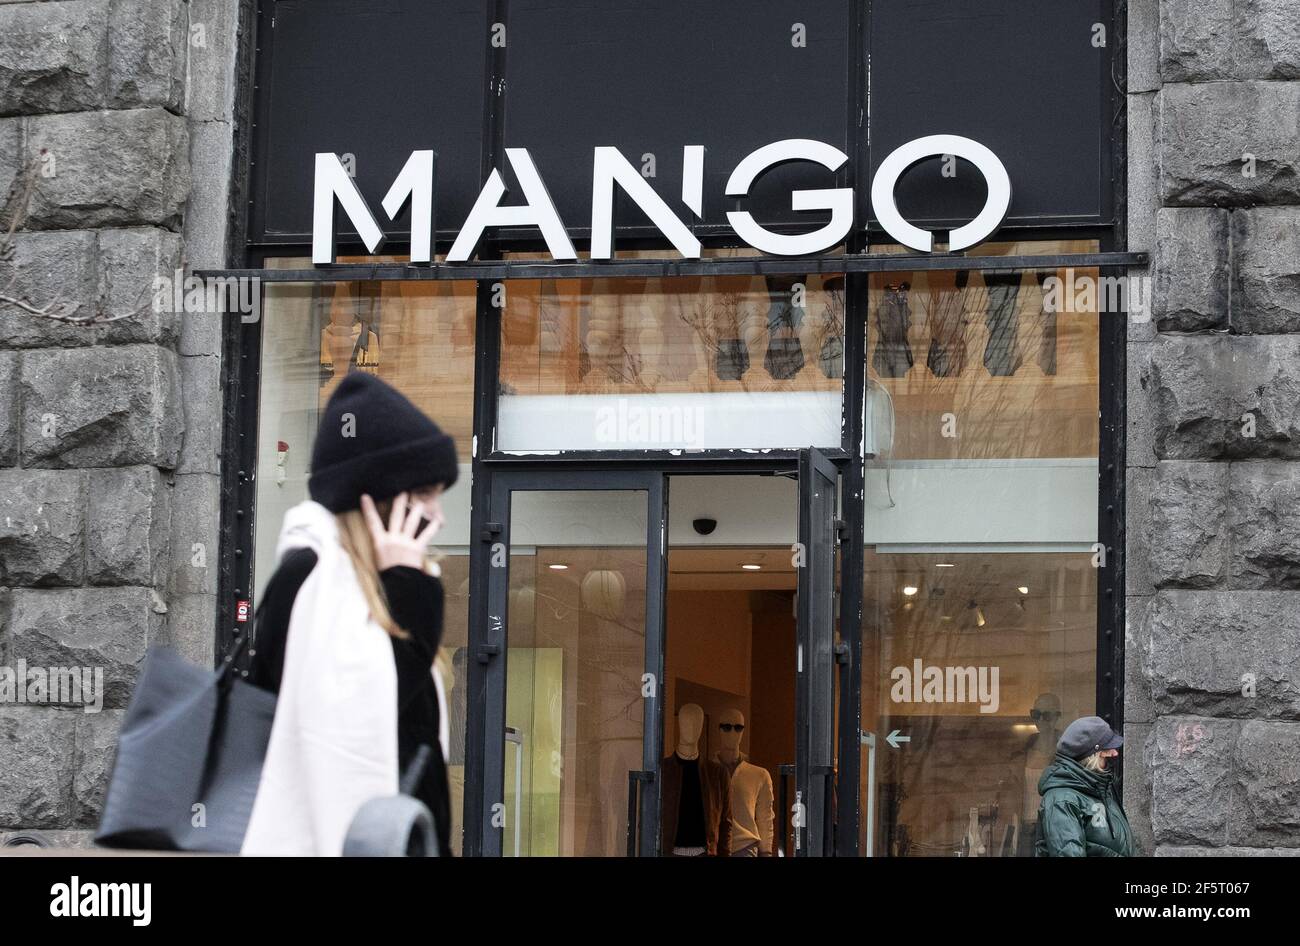 El logotipo de mango de una empresa española de diseño y fabricación de ropa se ve en la entrada a una tienda de la Marca en Kiev Fotografía de stock -